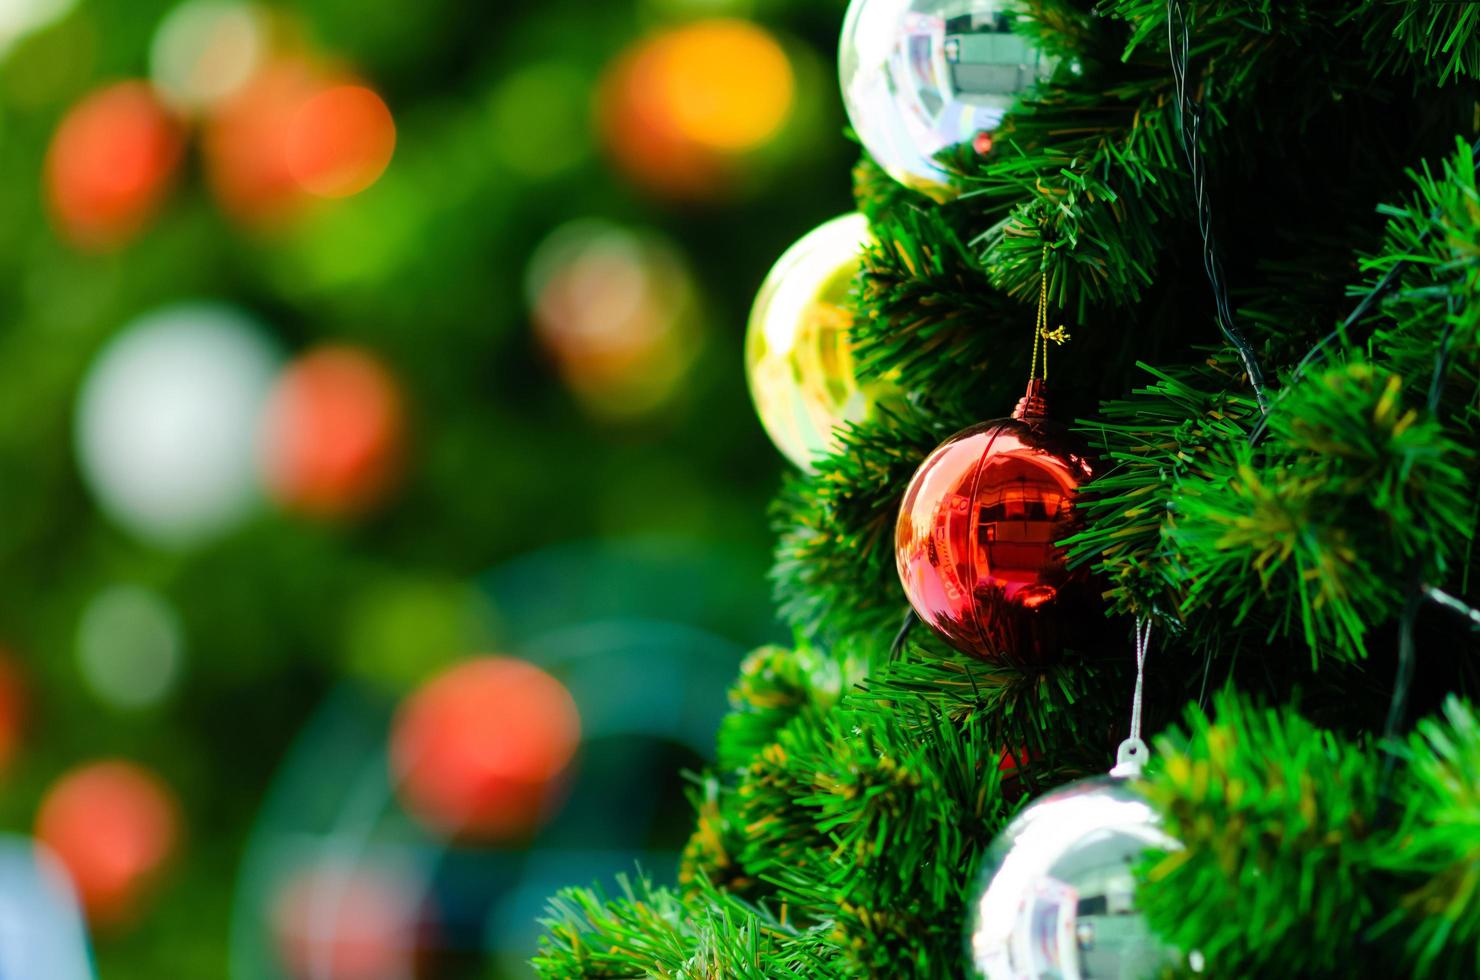 röd struntsak och Övrig prydnad hängande på jul träd med bokeh bakgrund från annan större jul träd. foto